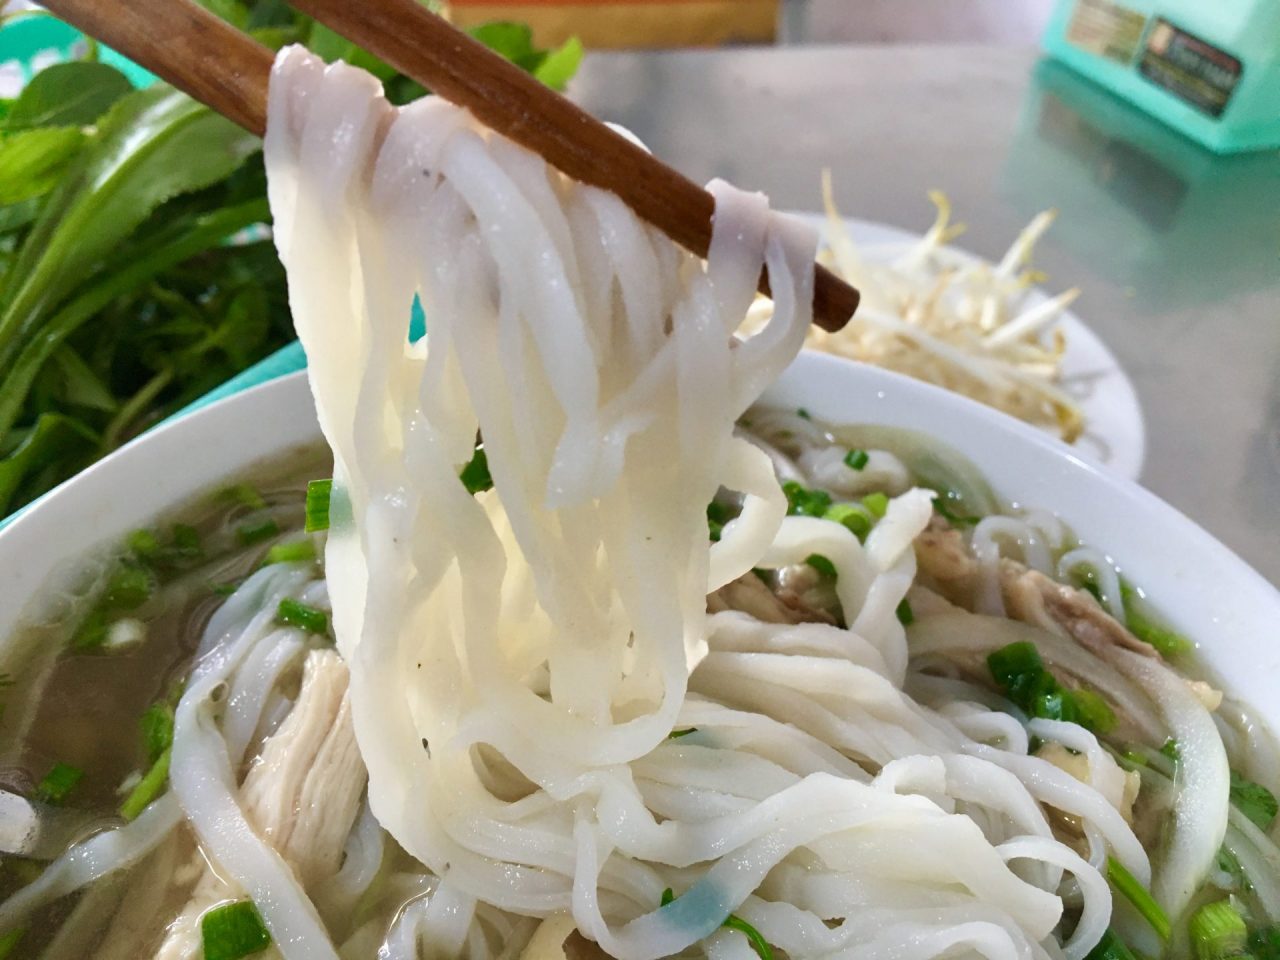 Phở Gà - Vietnamese Chicken Noodle Soup